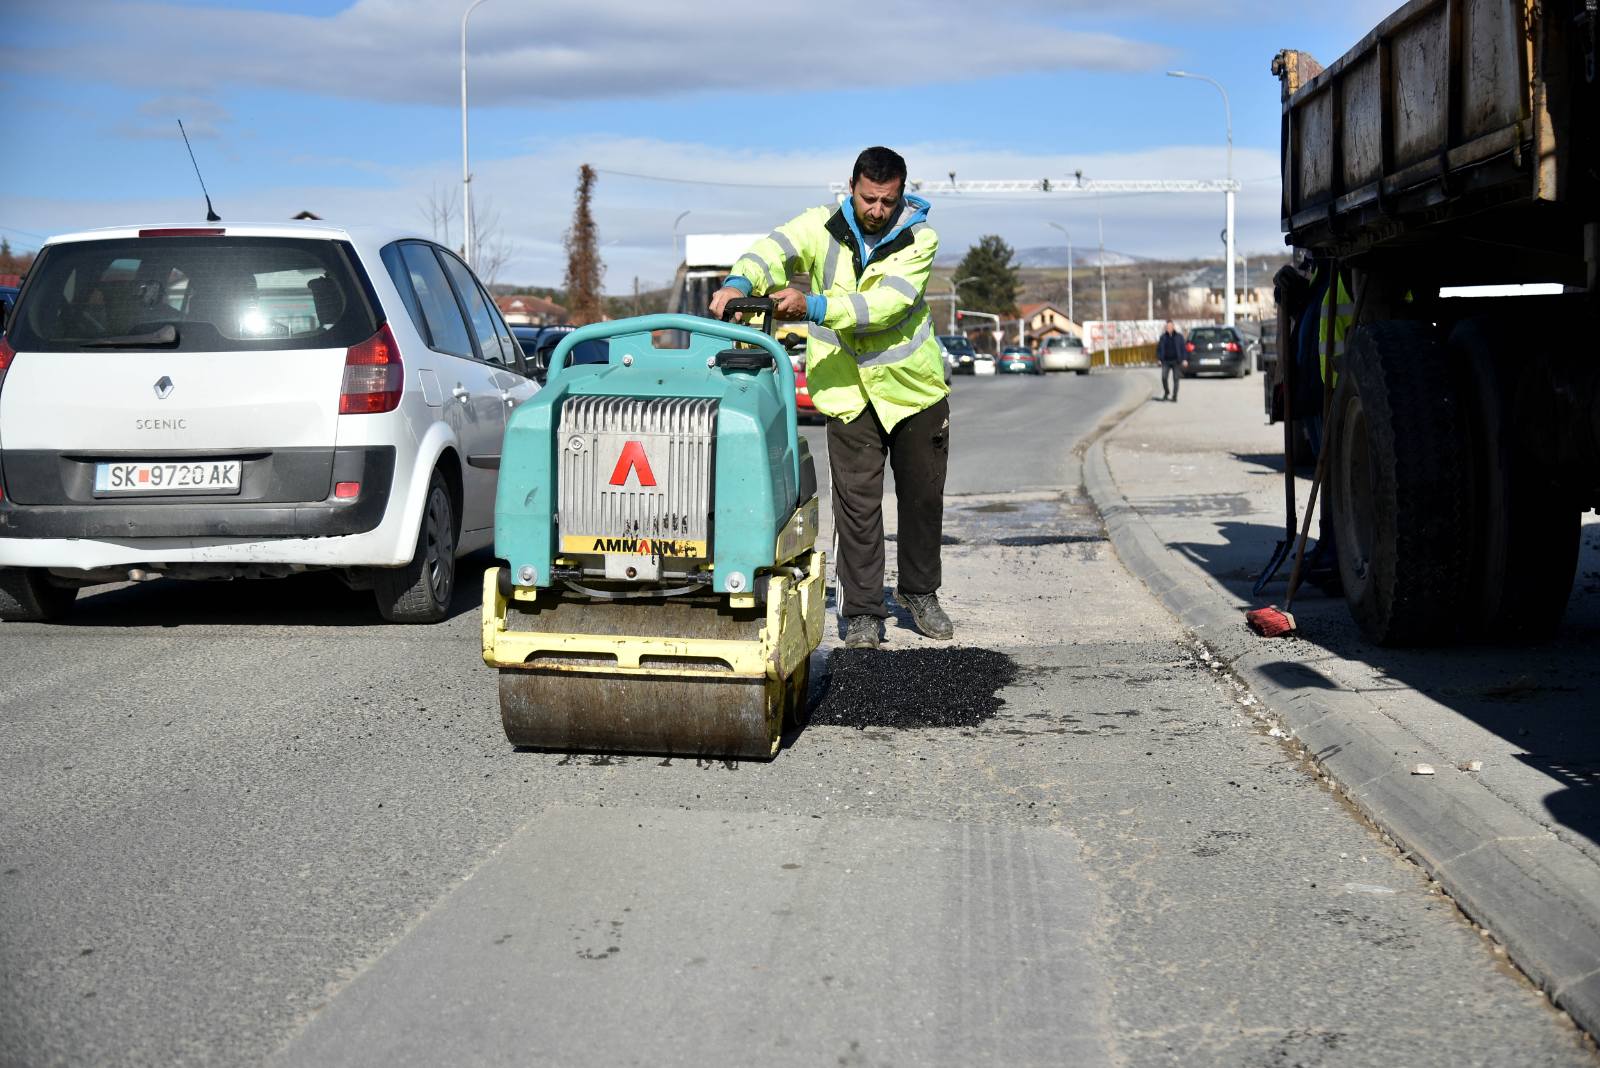 NP Rrugë dhe rrugica është duke riparuar rrugën kryesore në komunën e Sarajit